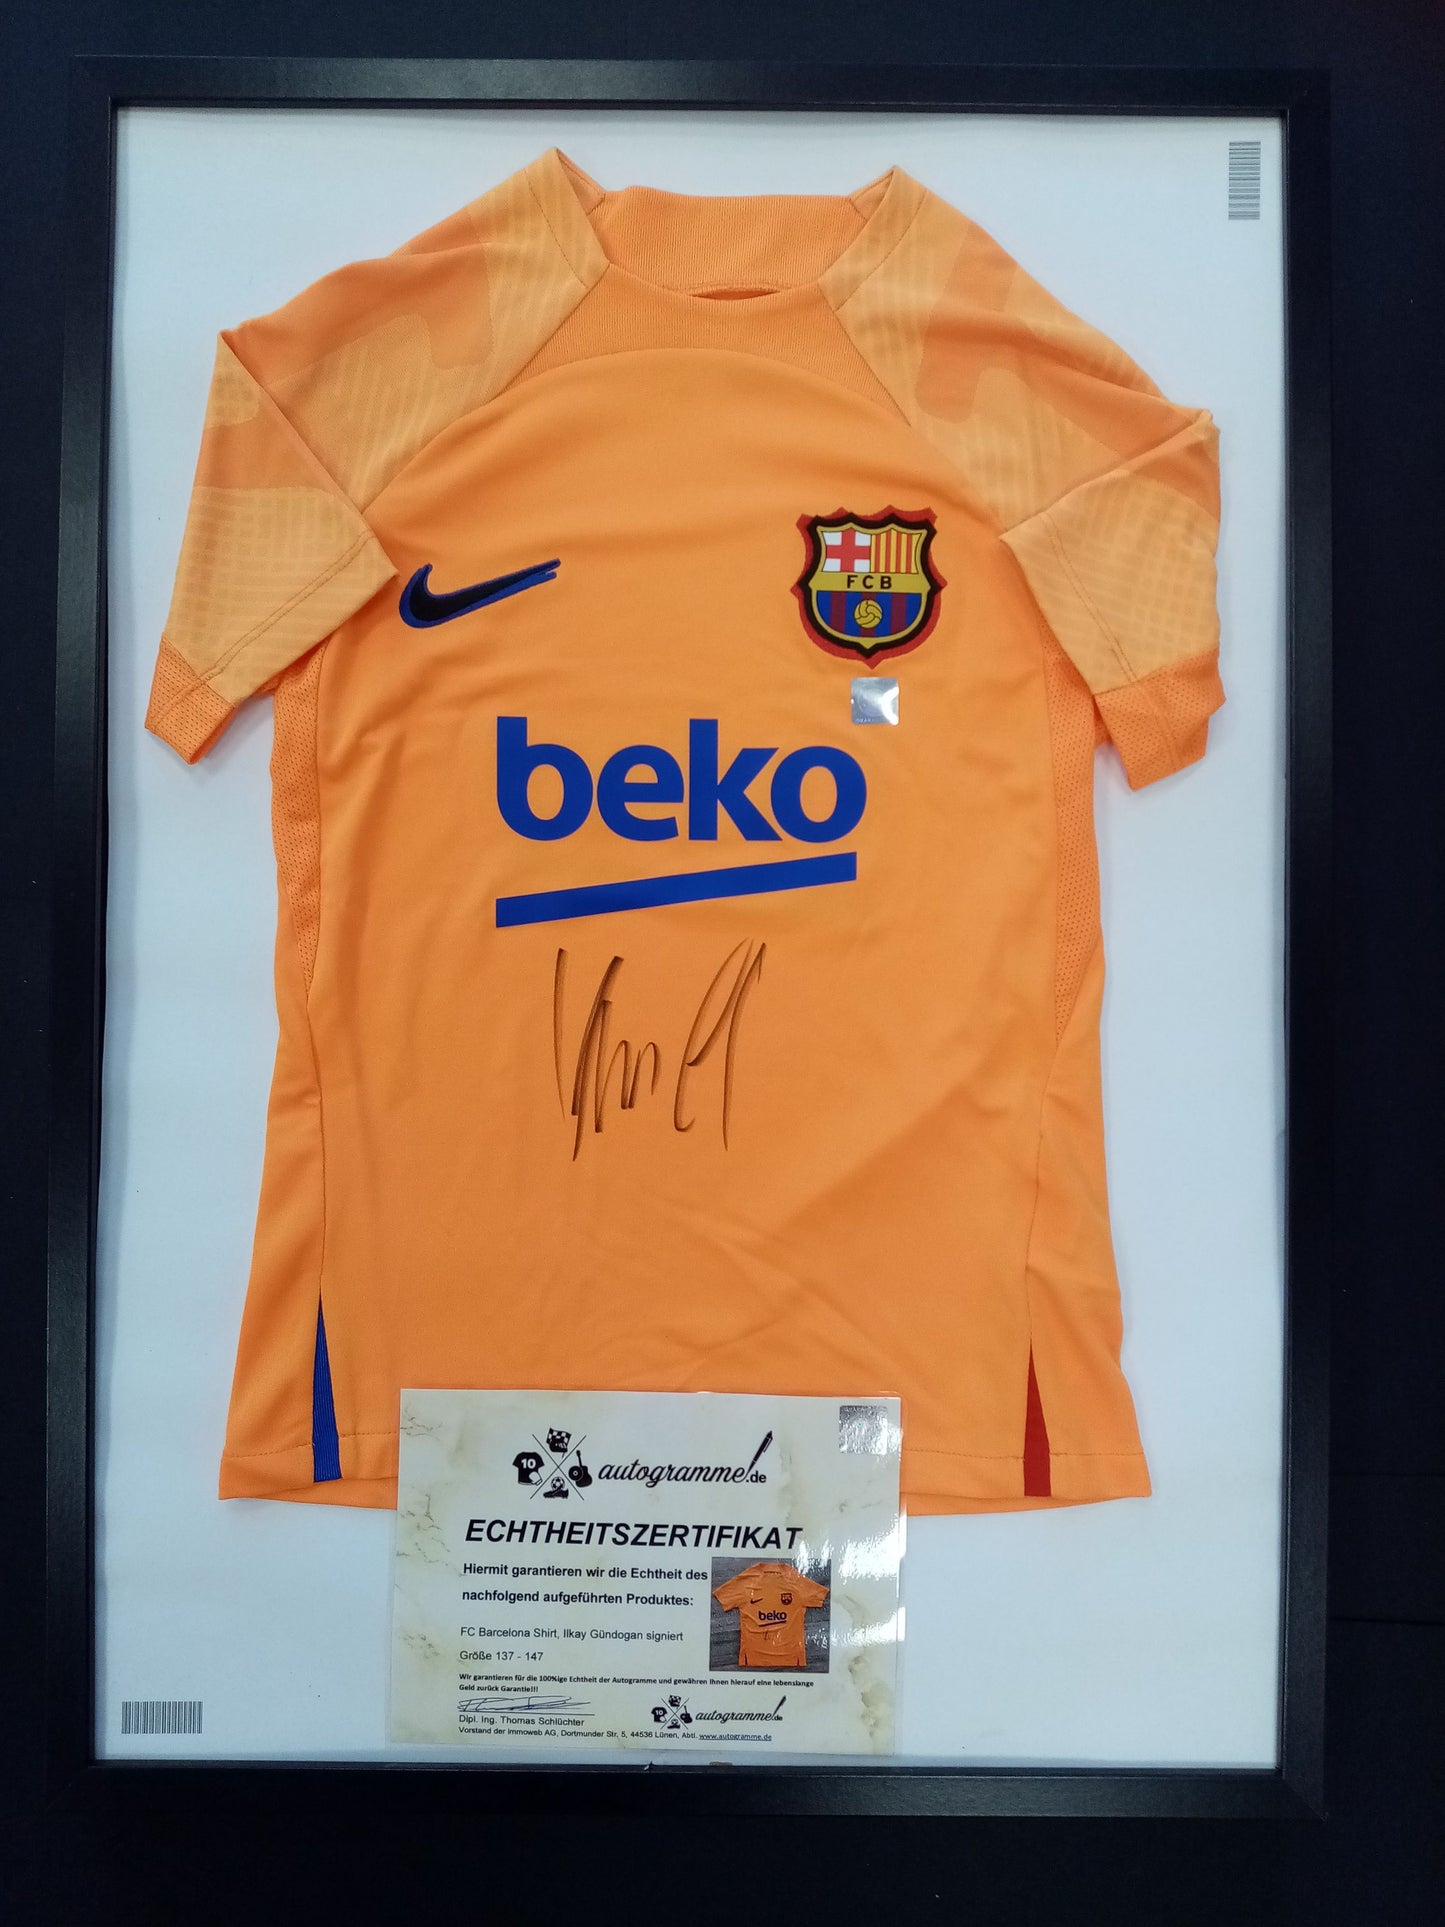 FC Barcelona Shirt Ilkay Gündogan signiert im Rahmen COA Nike Barca Fußball